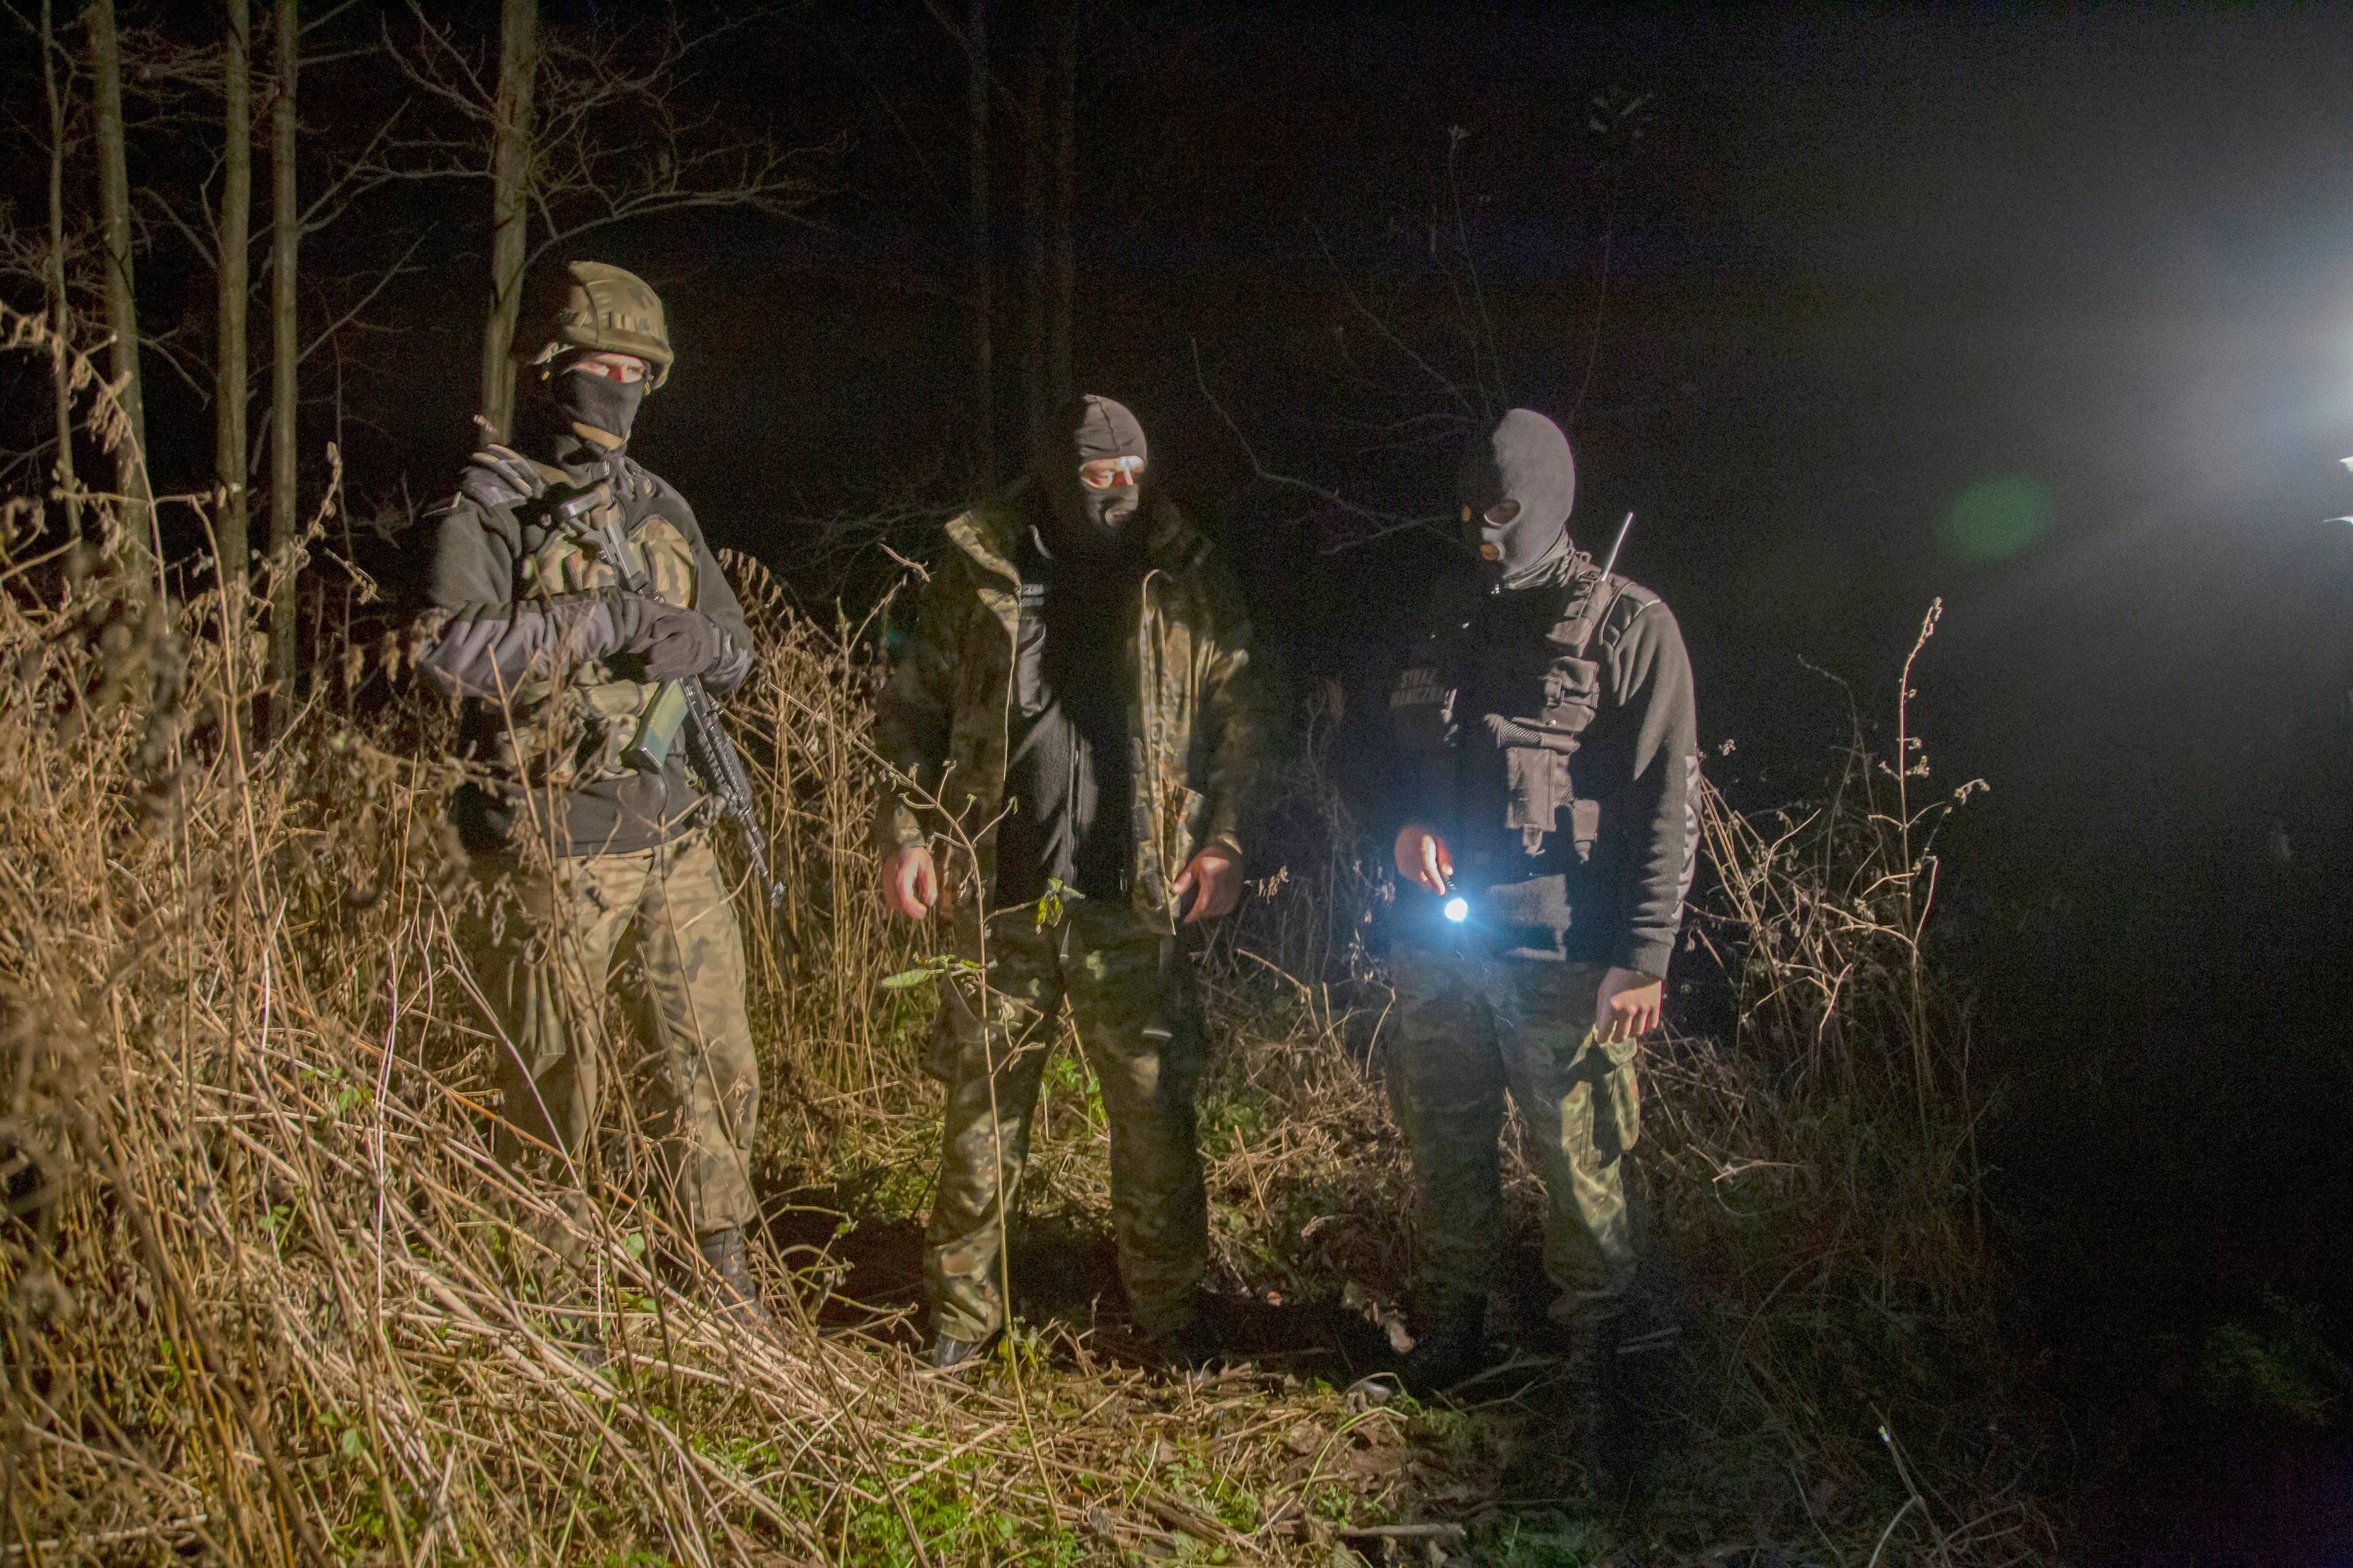 Funkcjonariusze Straży Granicznej świecą latarką w lesie w godzinach nocnych